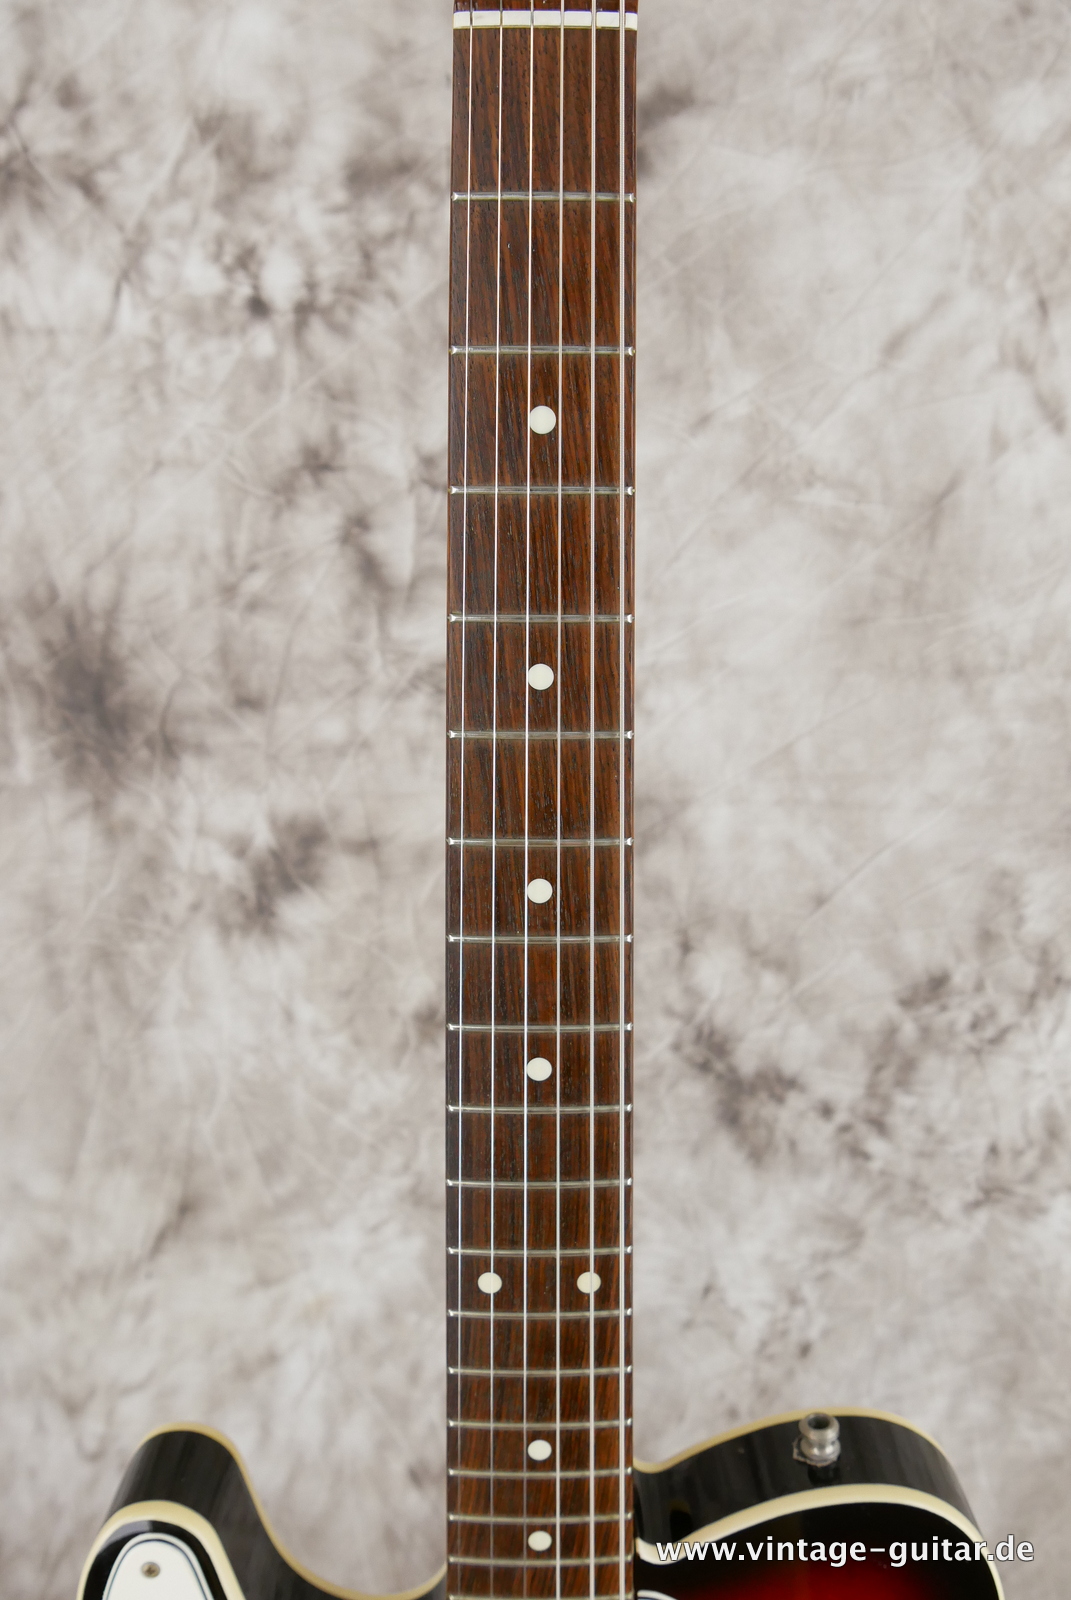 Fender-Telecaster-Custom-MIJ-62-reissue-1985-sunburst-005.JPG